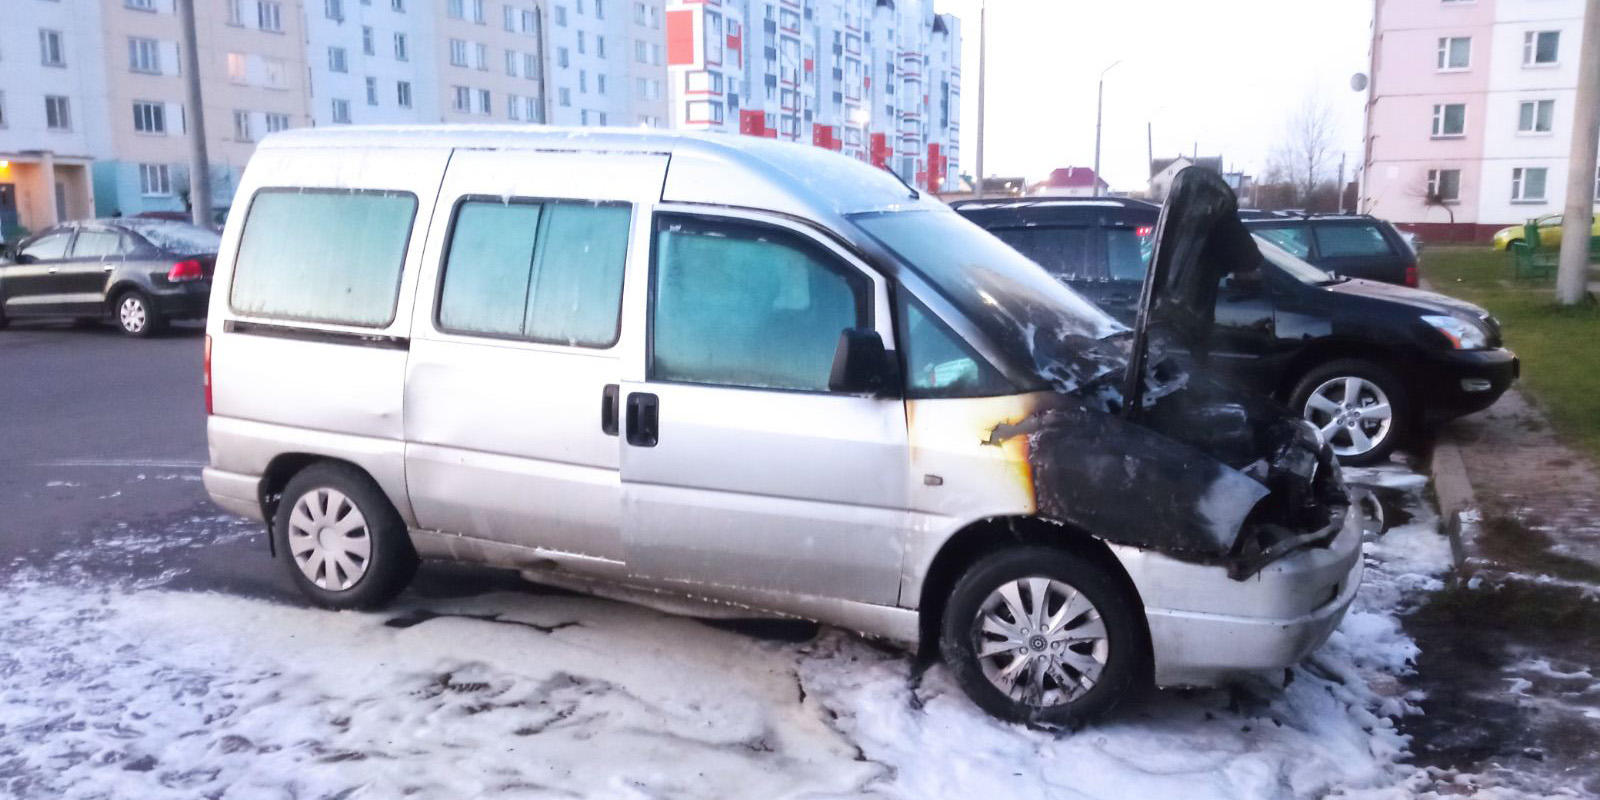 Два автомобиля горели в Могилеве на улице Габровской